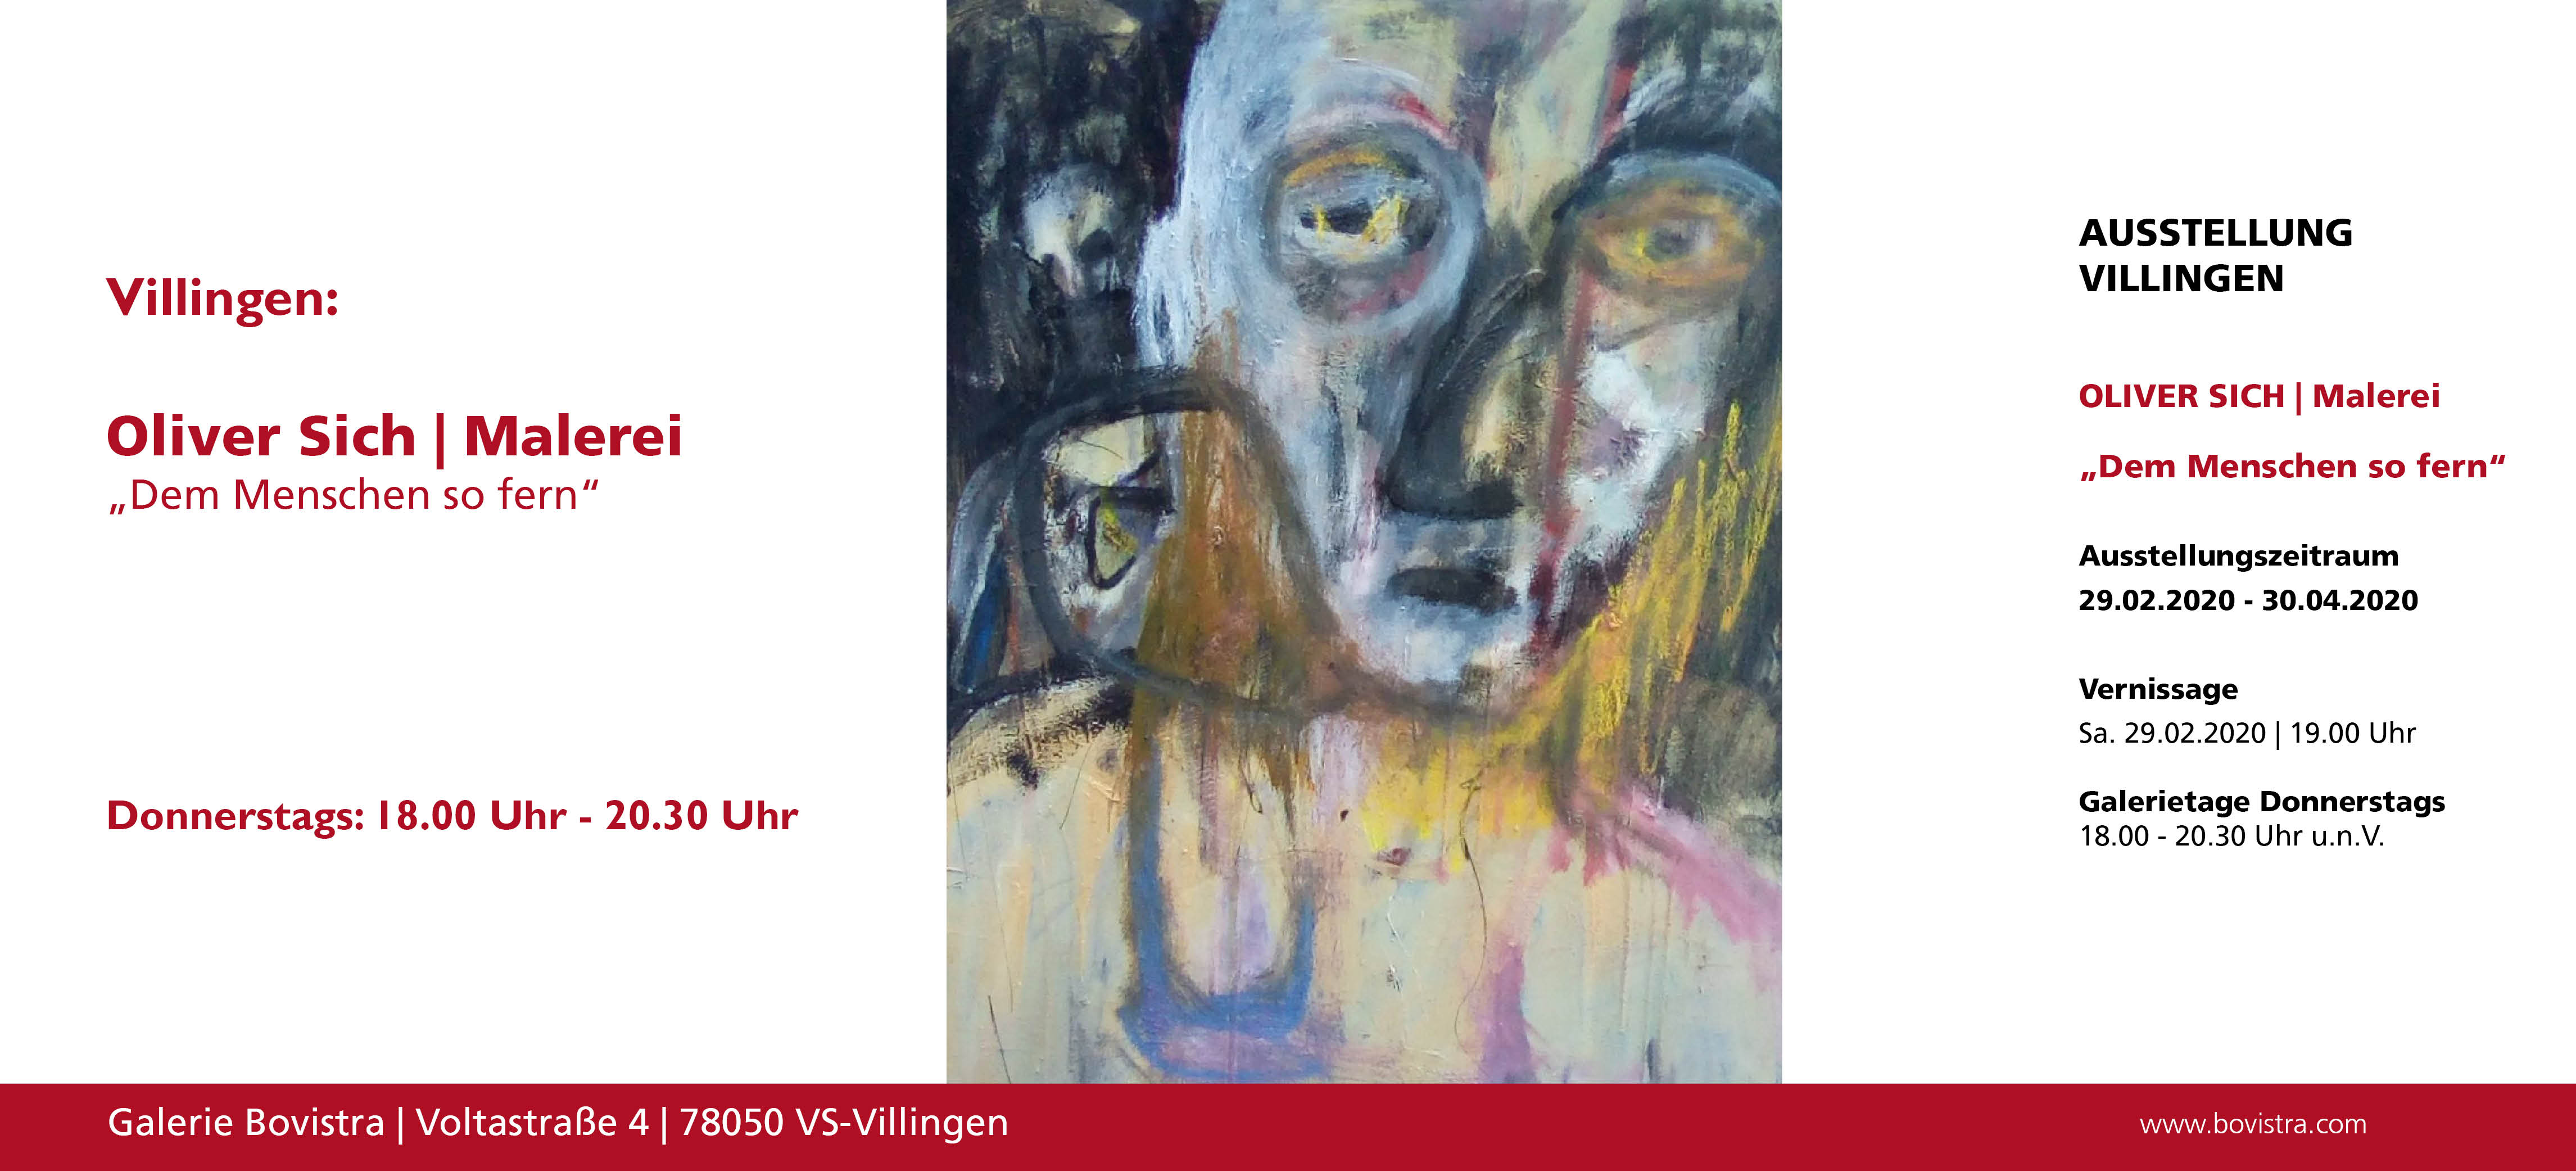 Aktuelle Ausstellung in der Galerie Bovistra in Villingen